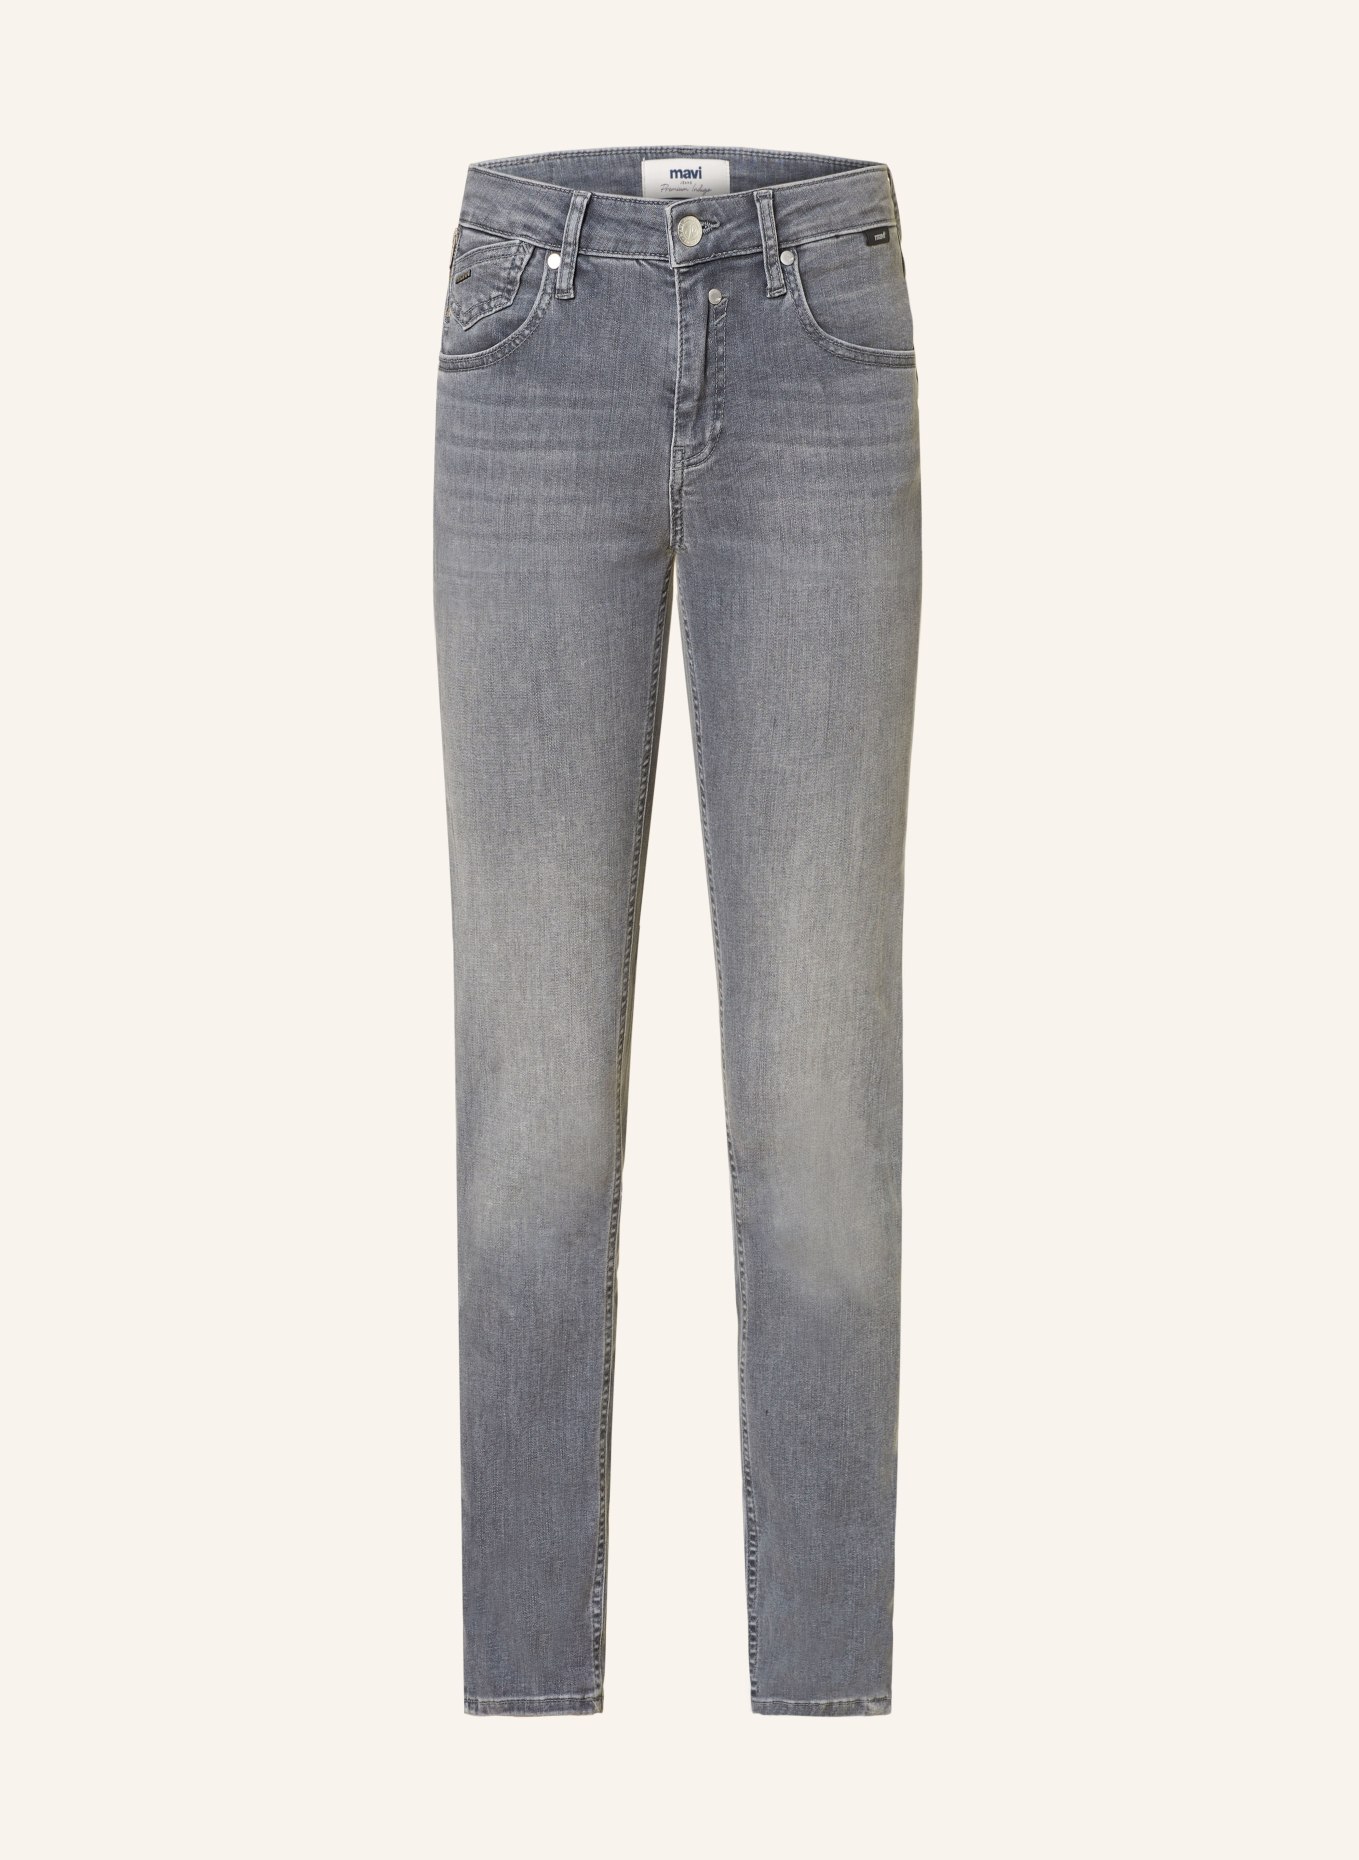 mavi Skinny Jeans SOPHIE, Farbe: 85723 grey premium indigo (Bild 1)